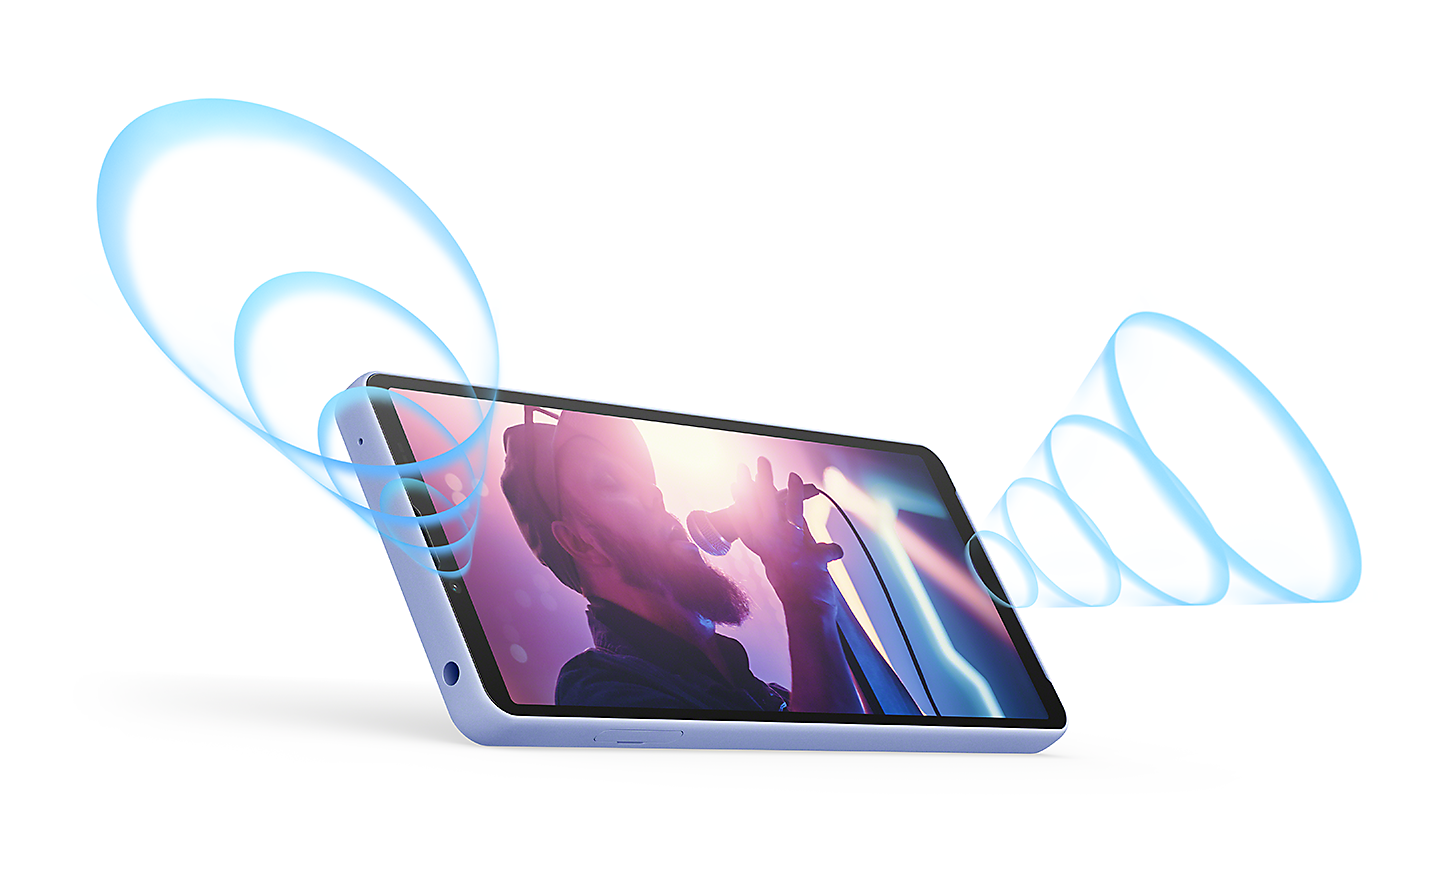 橫向的 Xperia 10 V 正在顯示一位歌手的圖片。繪製的藍色聲波由前置立體聲揚聲器中放射而出。